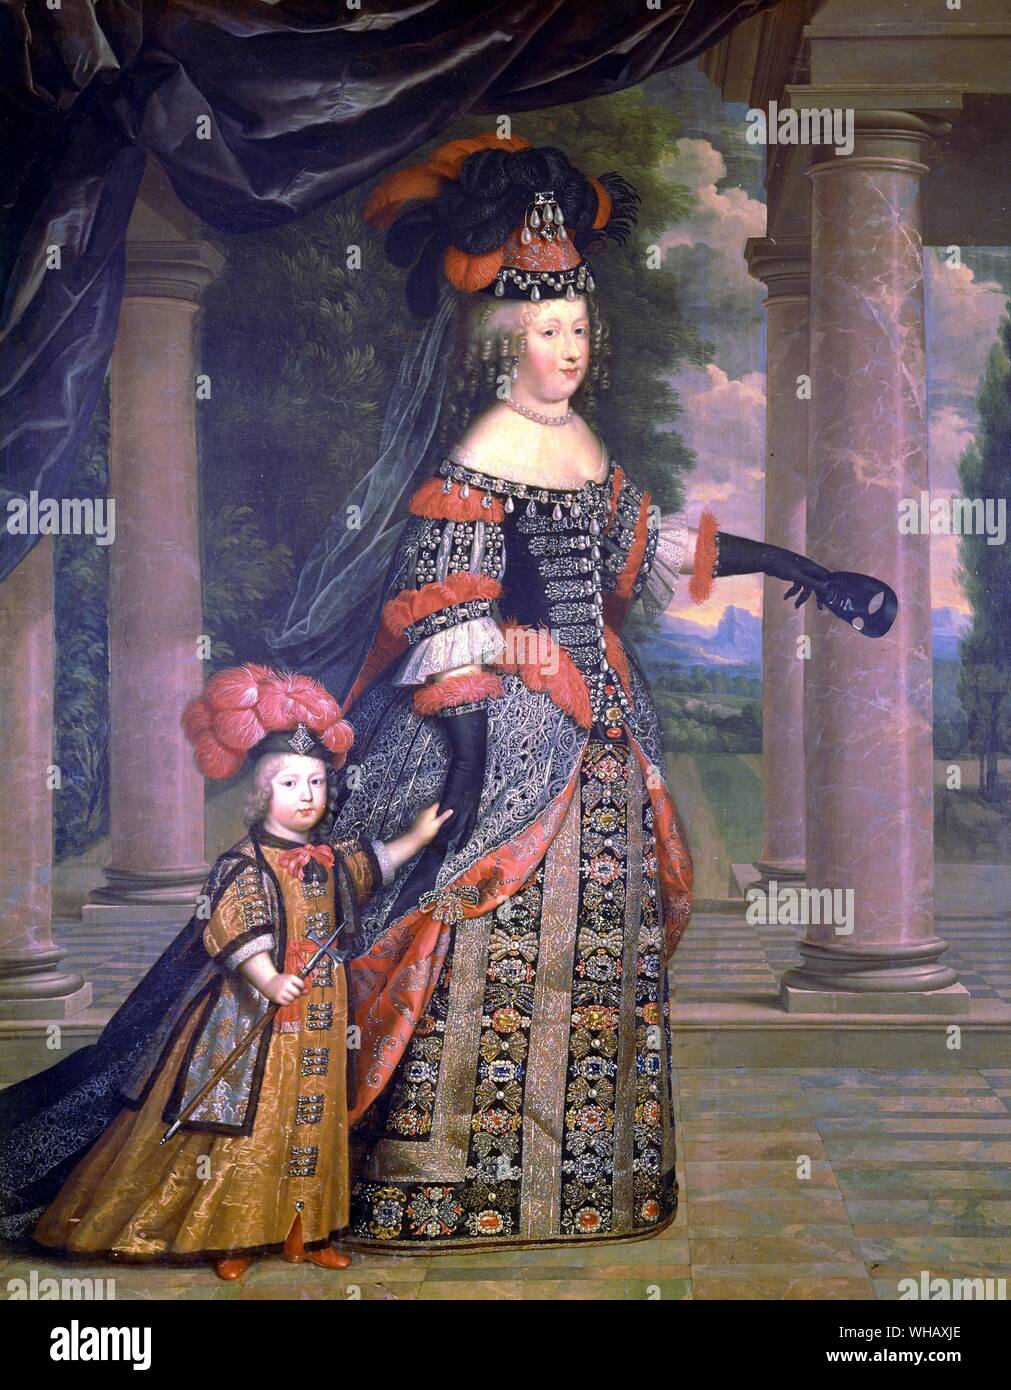 Königin Marie-Thérèse und den Dauphin von Pierre Mignard (1612-1695). Der Sonnenkönig von Nancy Mitford, Seite 57. Stockfoto